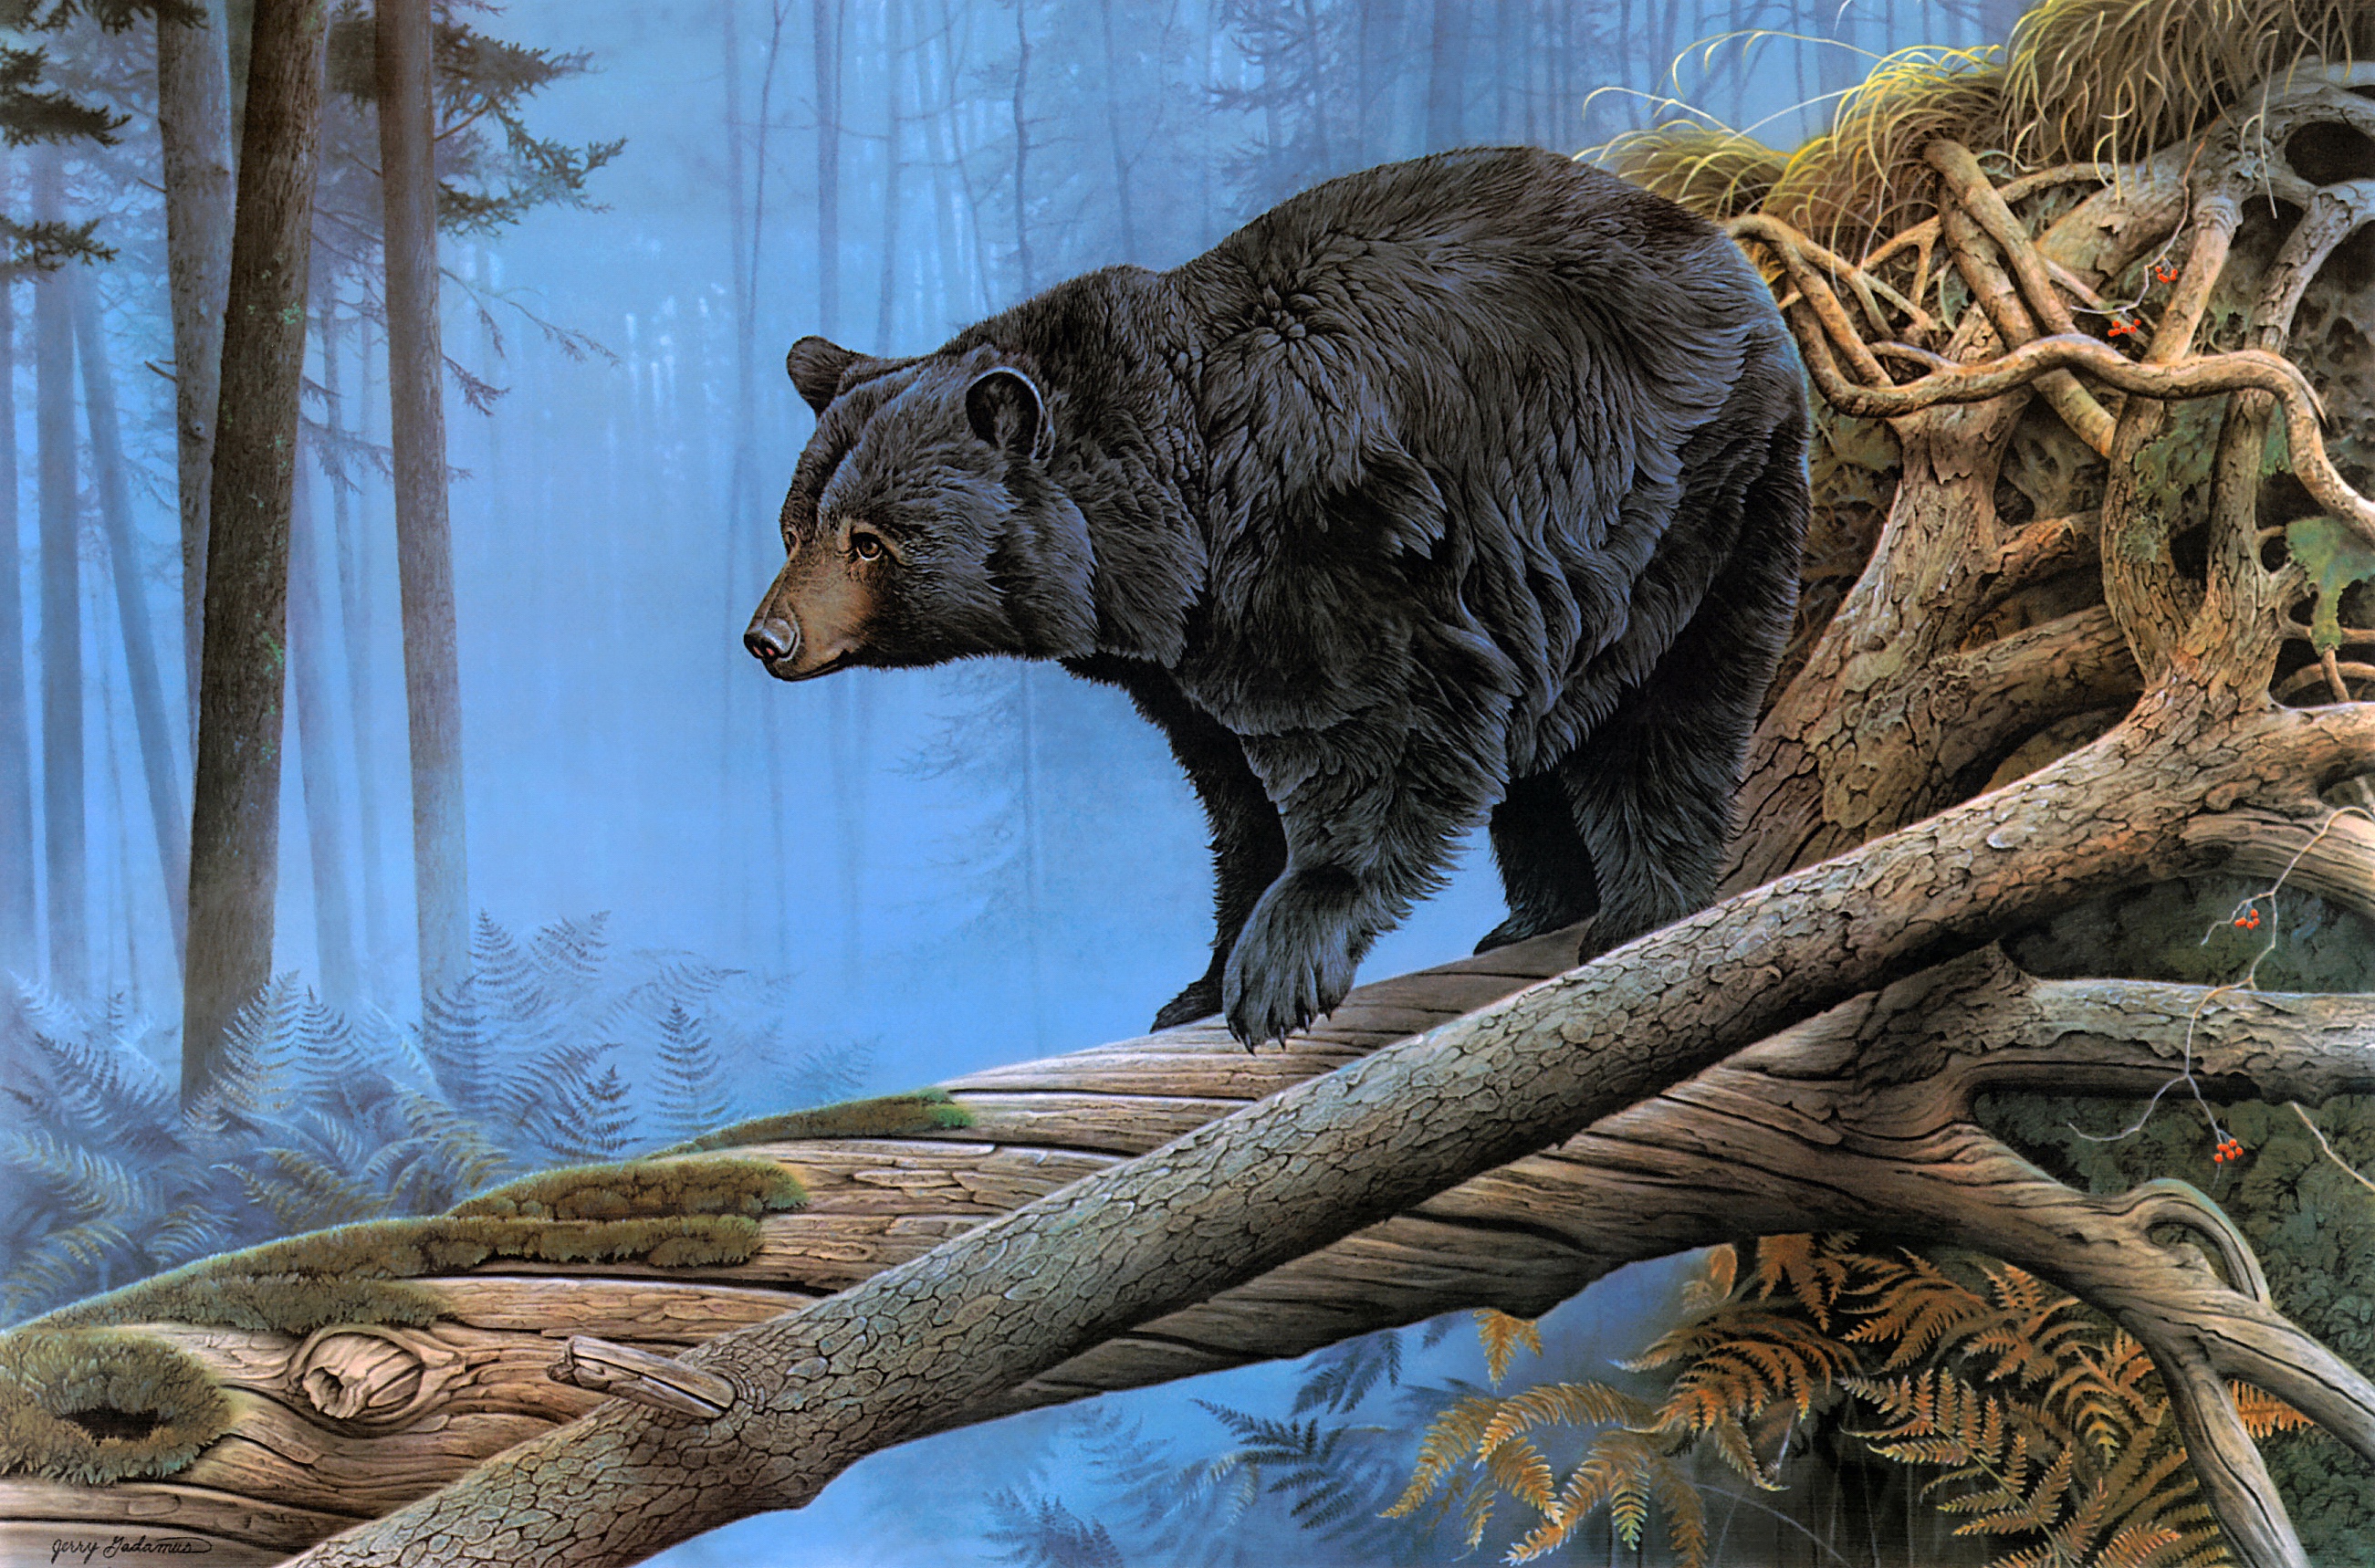 Скачать обои бесплатно Животные, Медведи, Медведь, Картина картинка на рабочий стол ПК